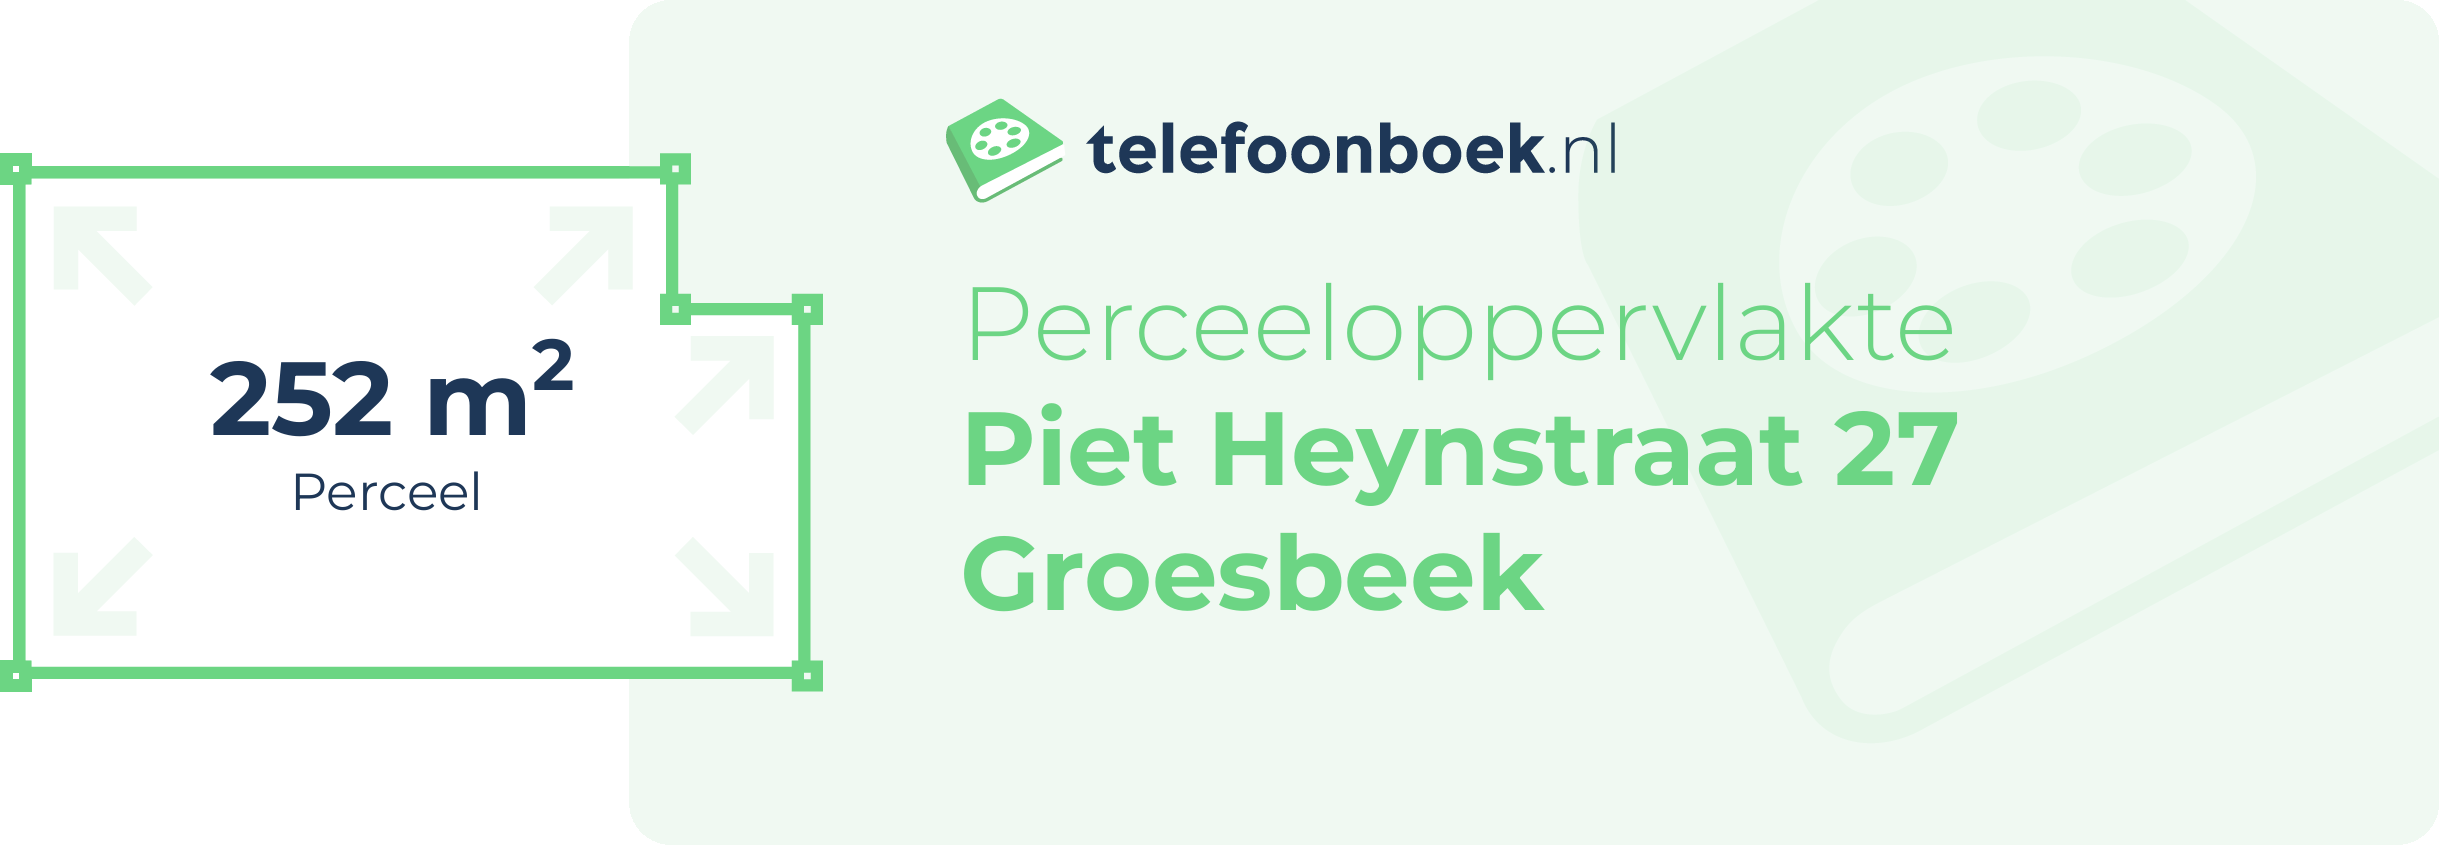 Perceeloppervlakte Piet Heynstraat 27 Groesbeek